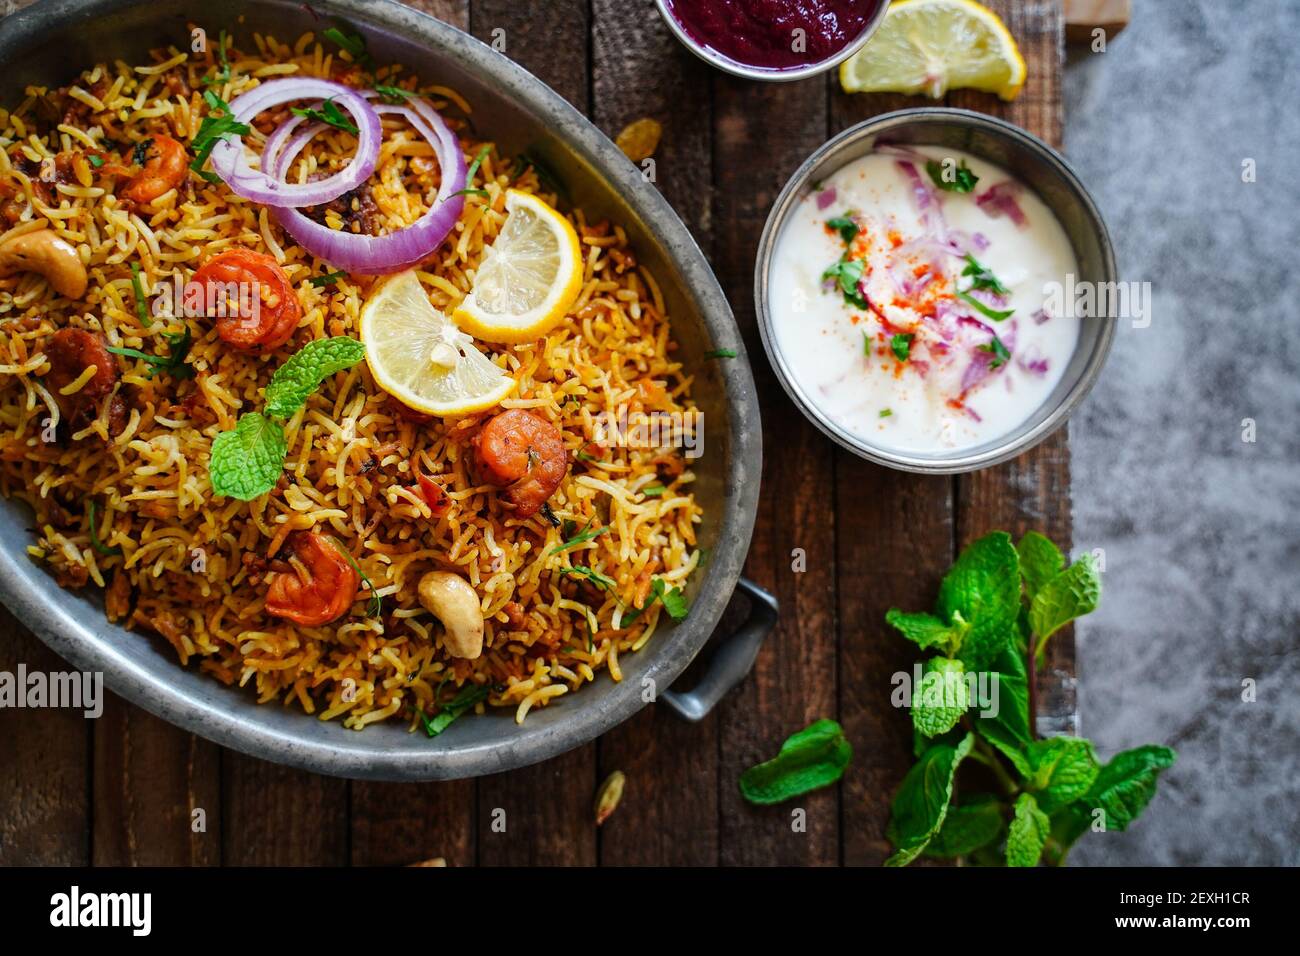 Hausgemachte Garnelen Shrimp biryani serviert mit Joghurt Raita und Rüben Gurkenscheibe Stockfoto